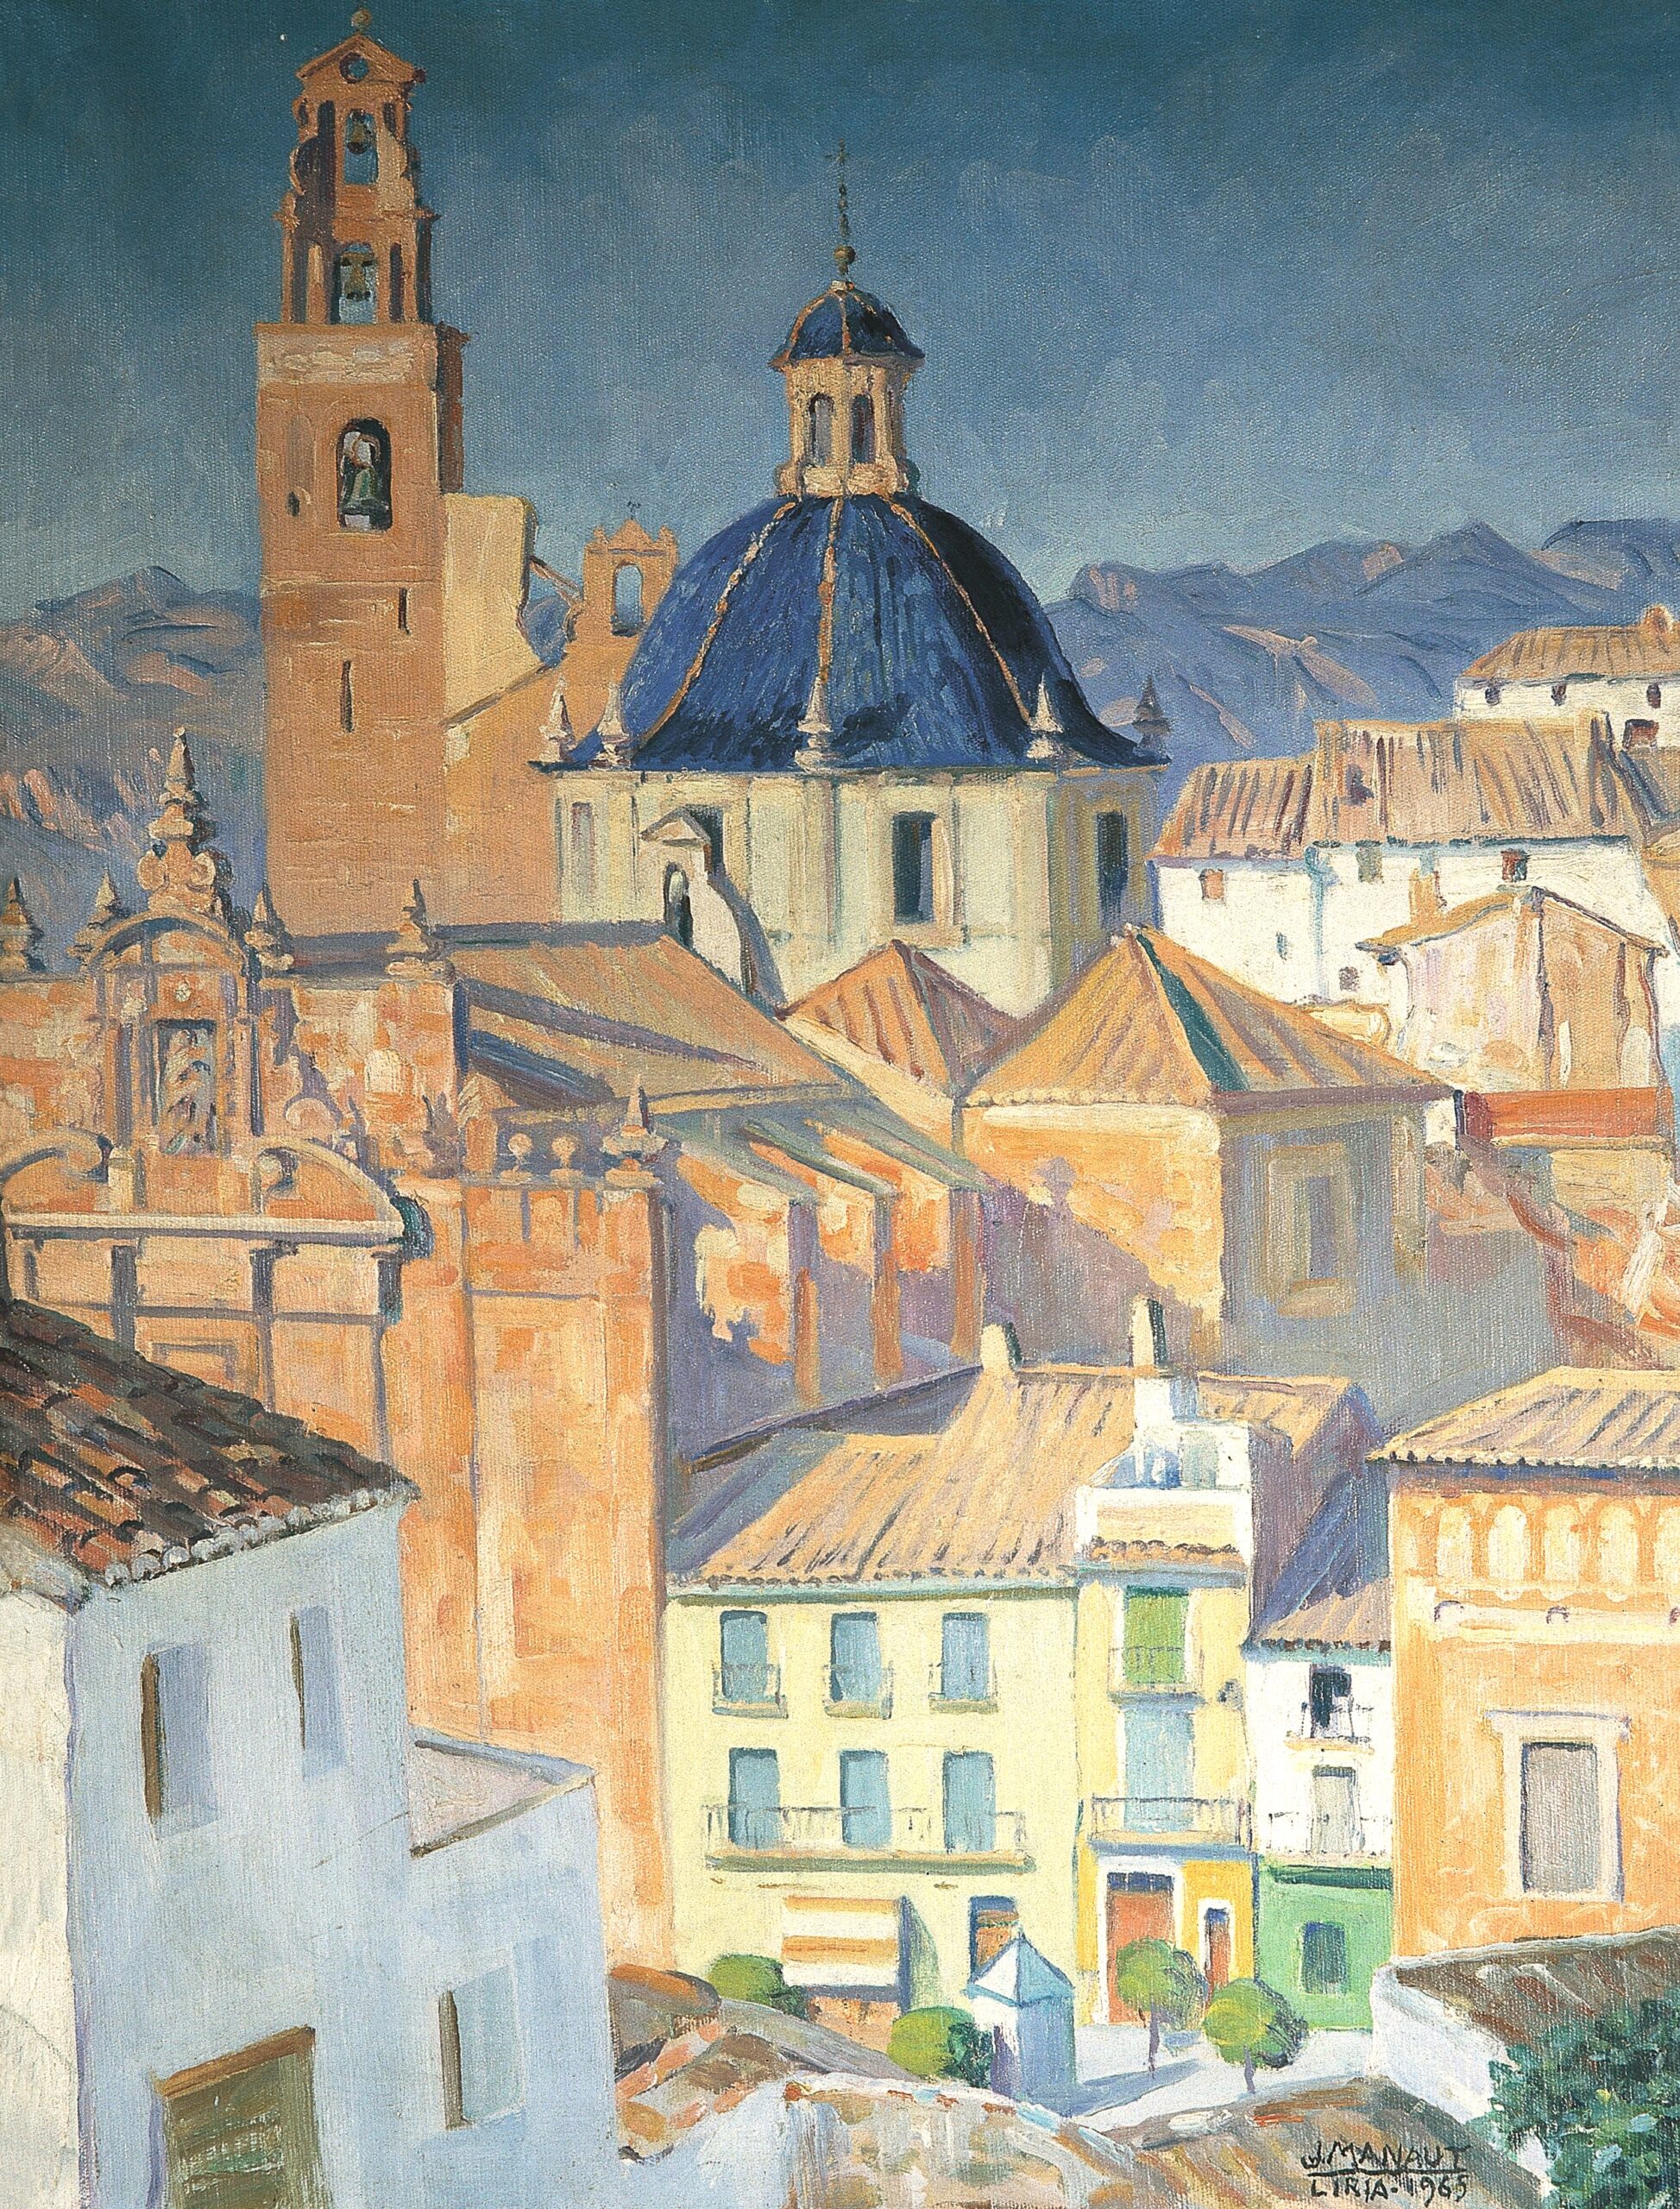 Pintura de José Manaut titulada Llíria, 1965. Óleo sobre lienzo.